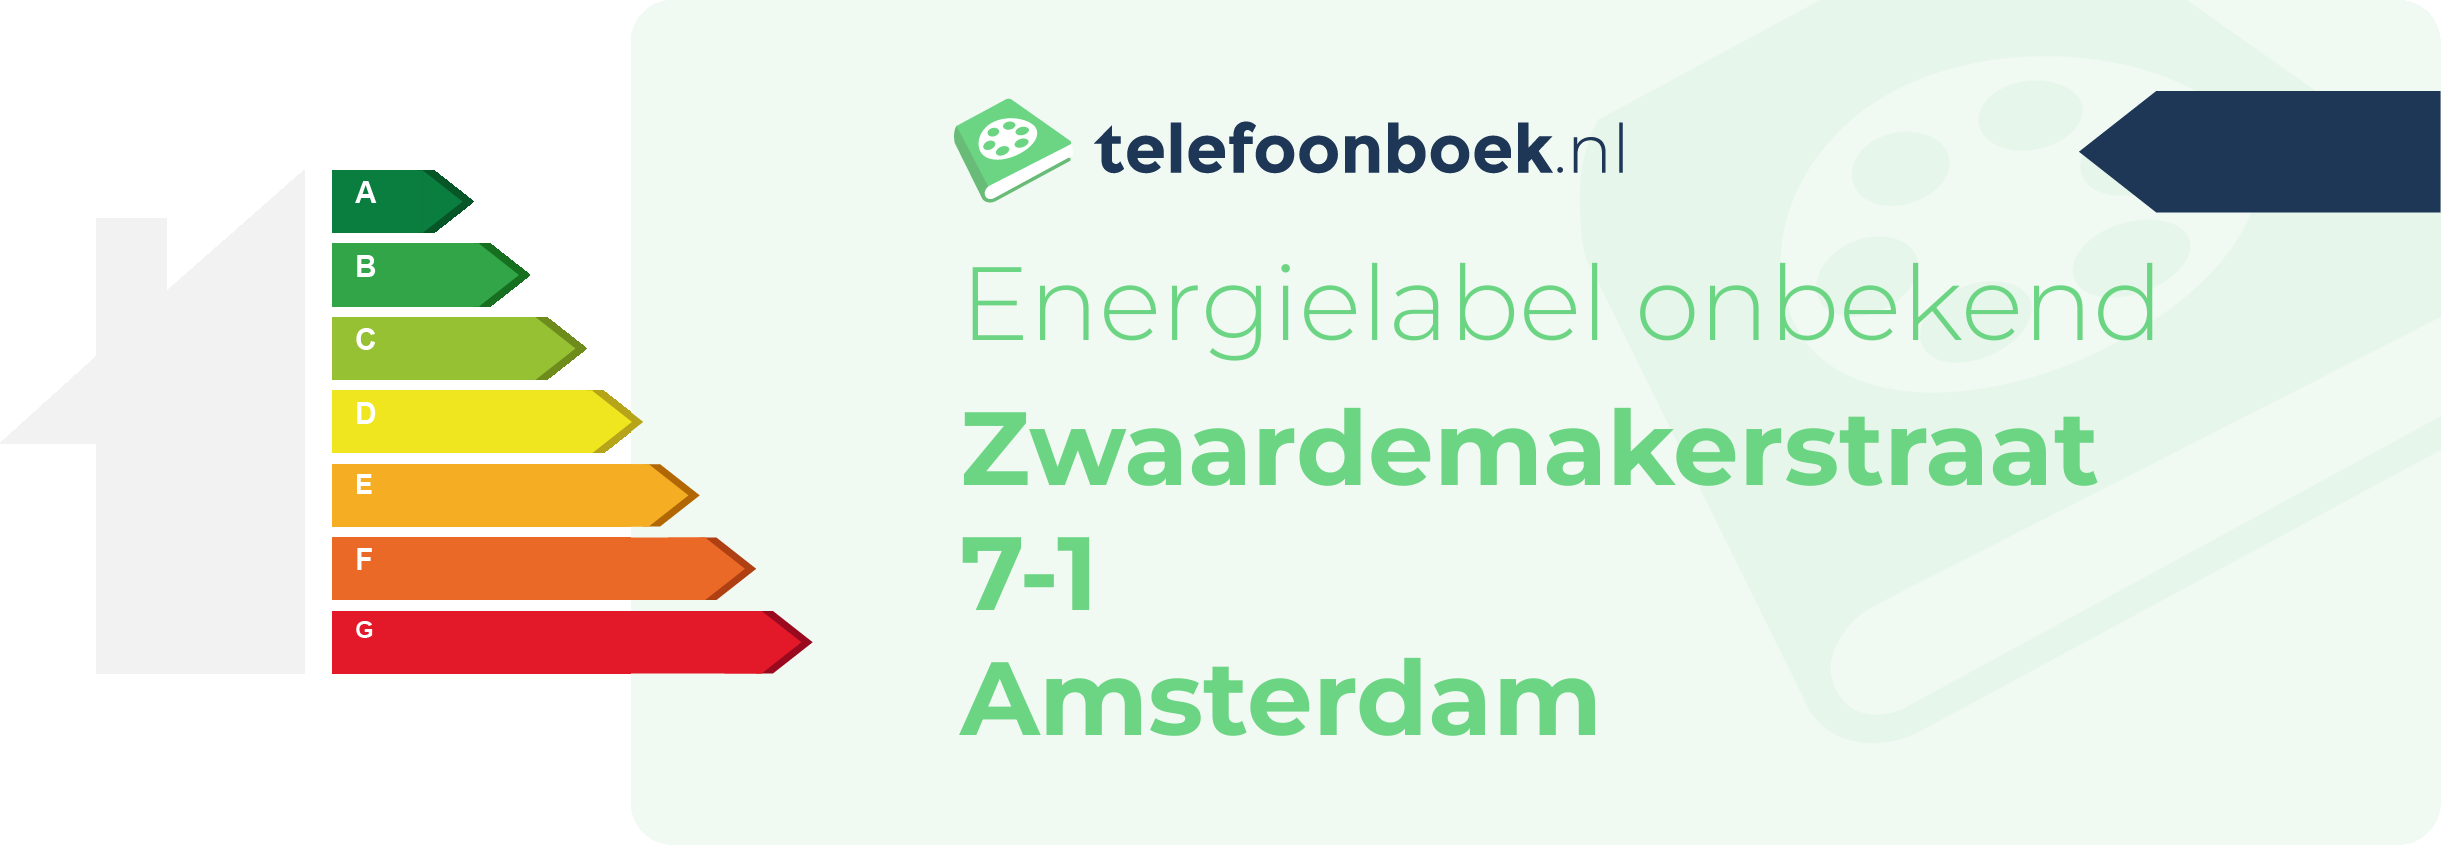 Energielabel Zwaardemakerstraat 7-1 Amsterdam